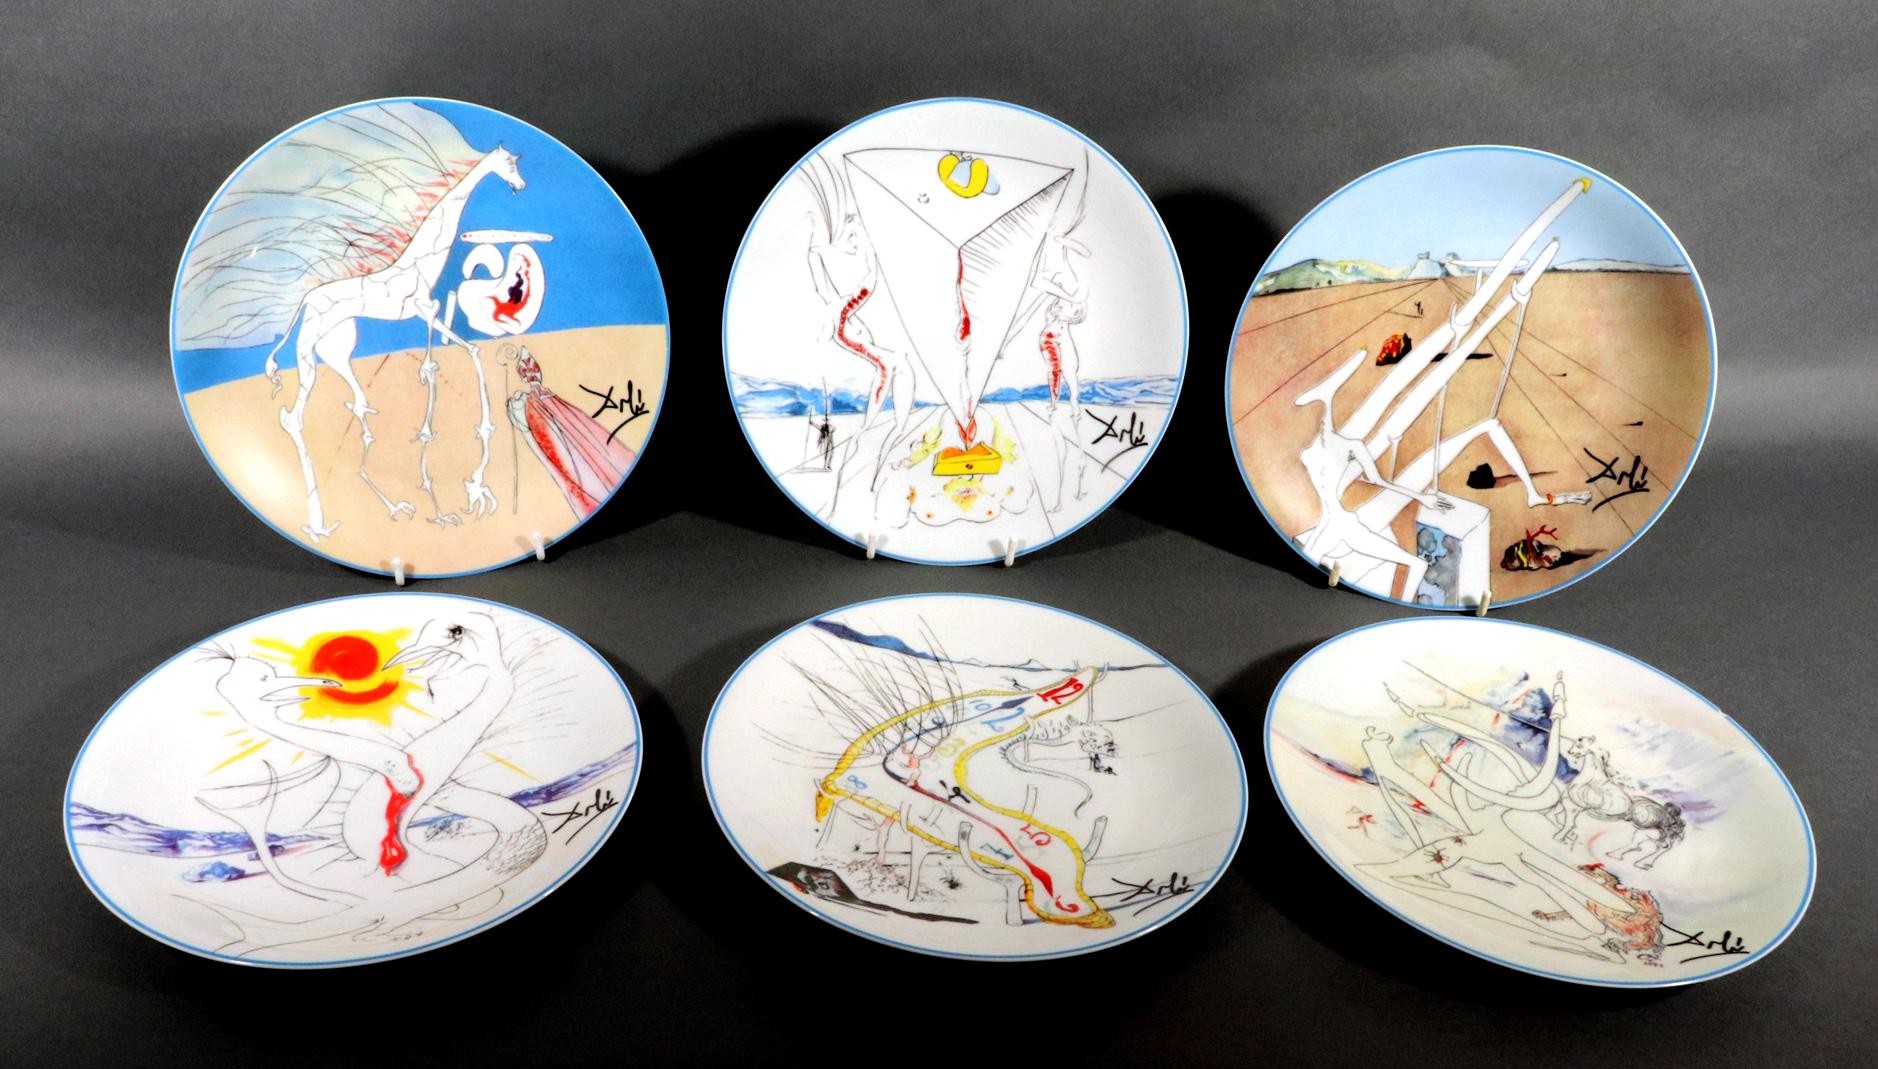 Ensemble de six assiettes de cabinet en porcelaine imprimée par transfert à Limoges, conçues par Salvador Dali,
''Le Conquete du Cosmos'' 
Édition limitée numéro 1639/4000,
Daté de 1974

Les six plaques, chacune avec une image différente,